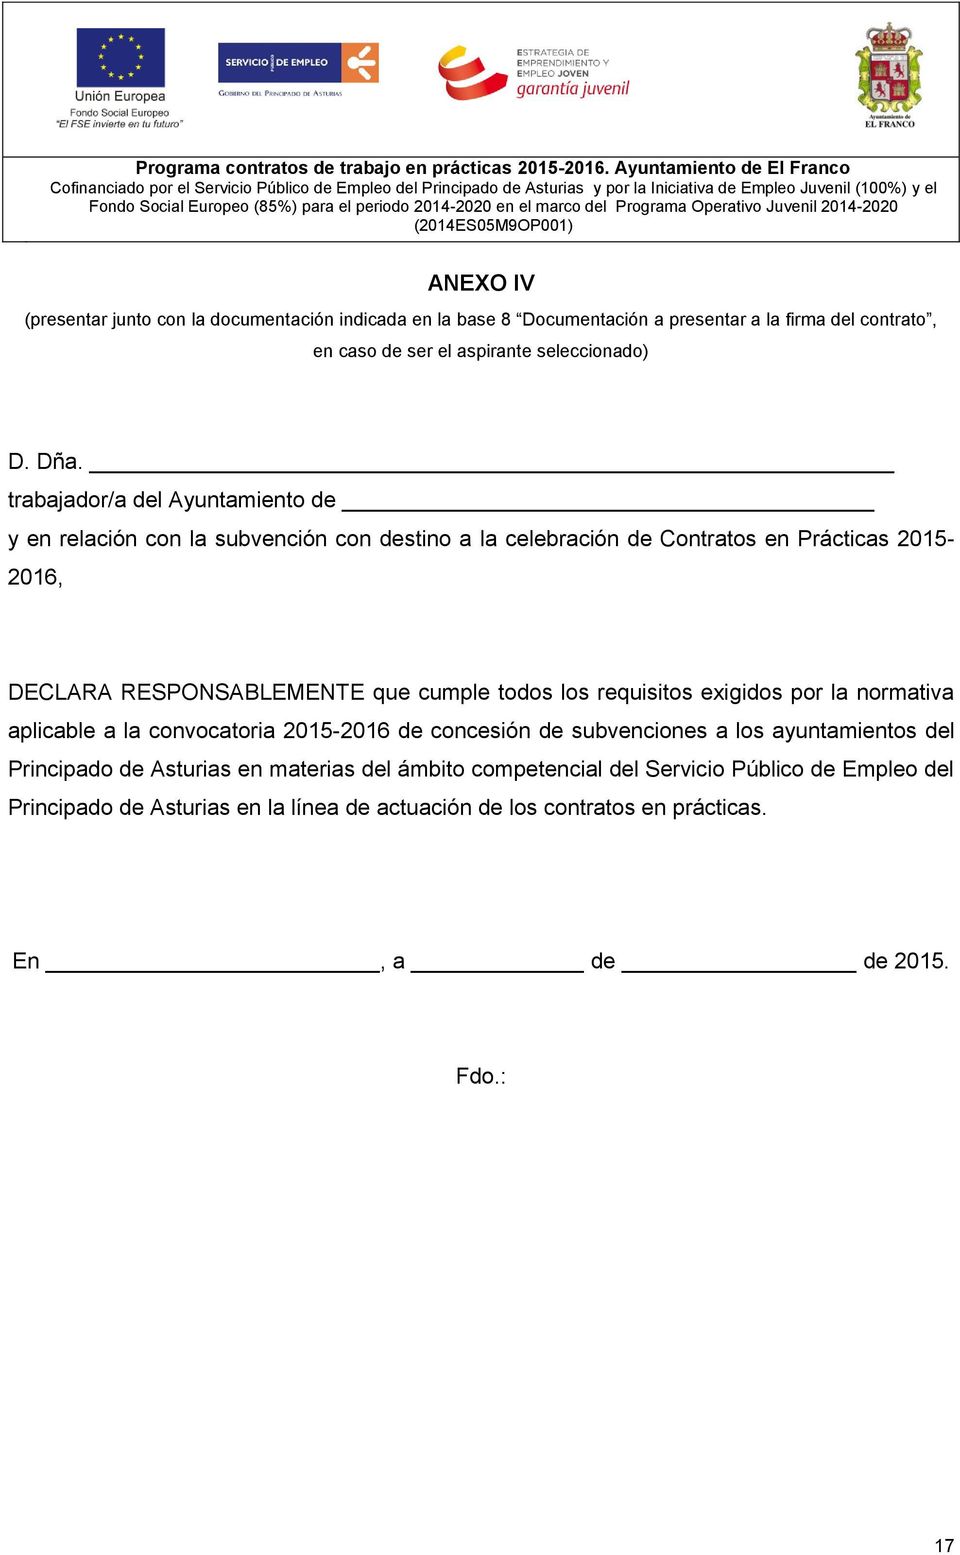 todos los requisitos exigidos por la normativa aplicable a la convocatoria 2015-2016 de concesión de subvenciones a los ayuntamientos del Principado de Asturias en